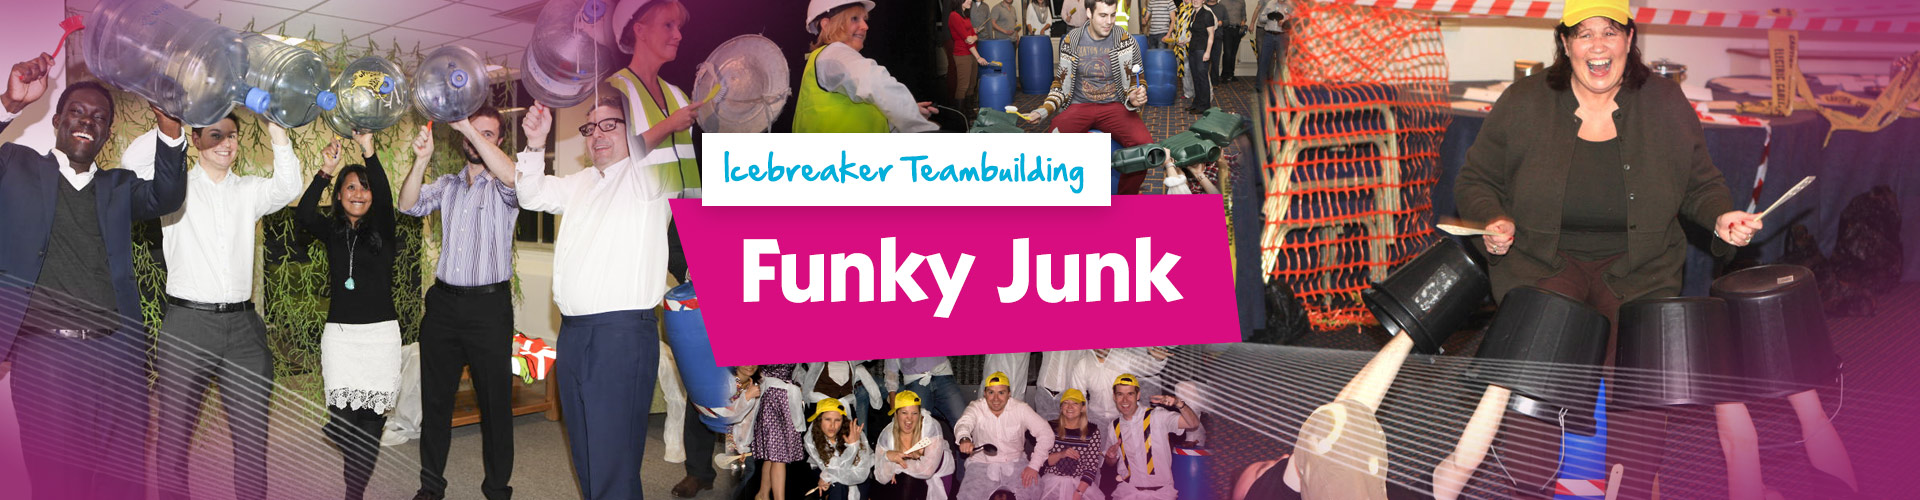 Teambuilding | Funky Junk